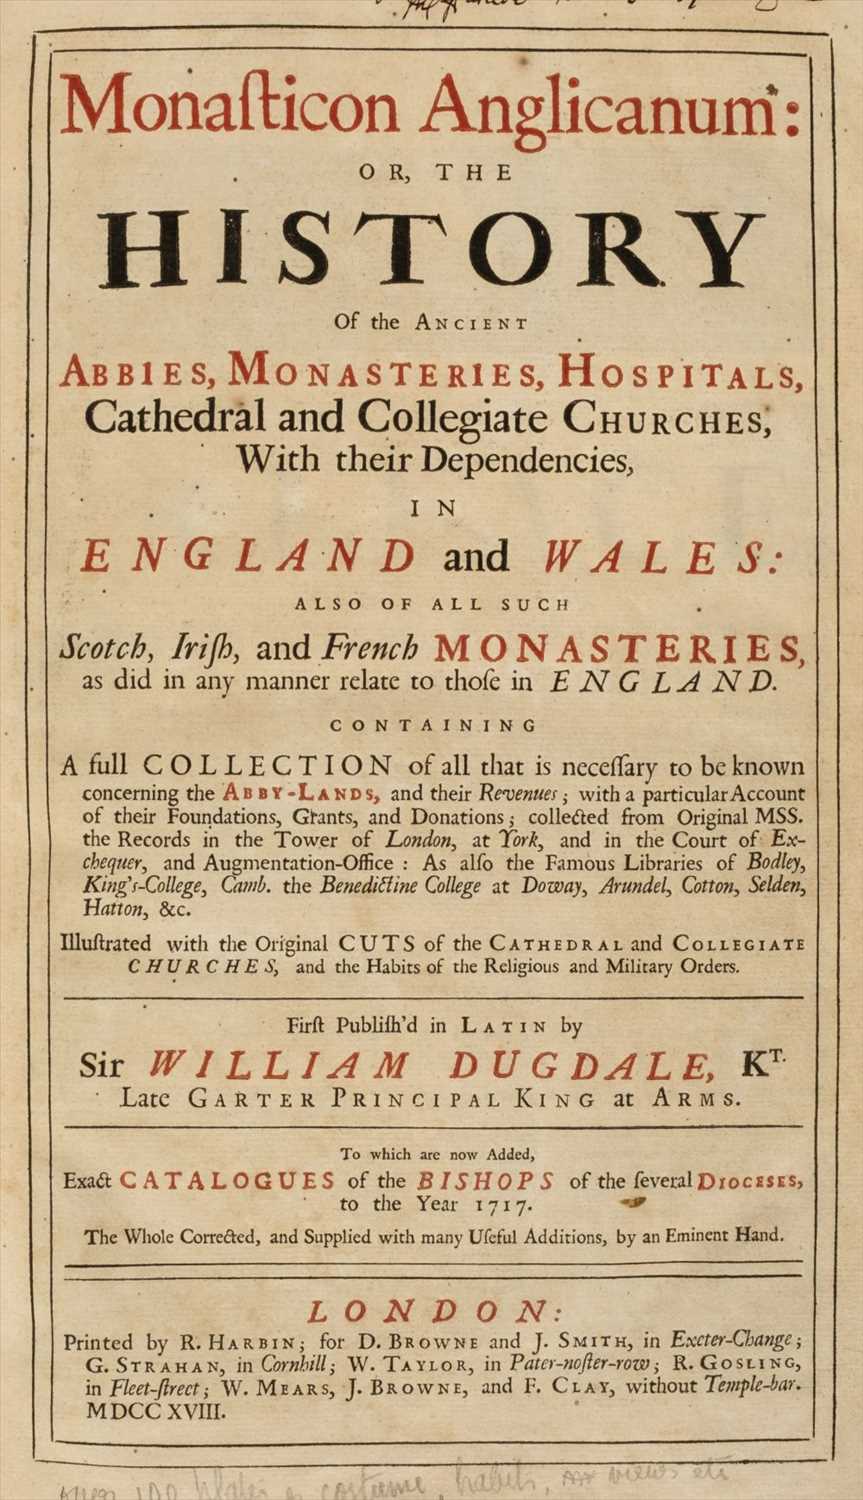 Lot 165 - Dugdale (William). Monasticon Anglicanum, 1718